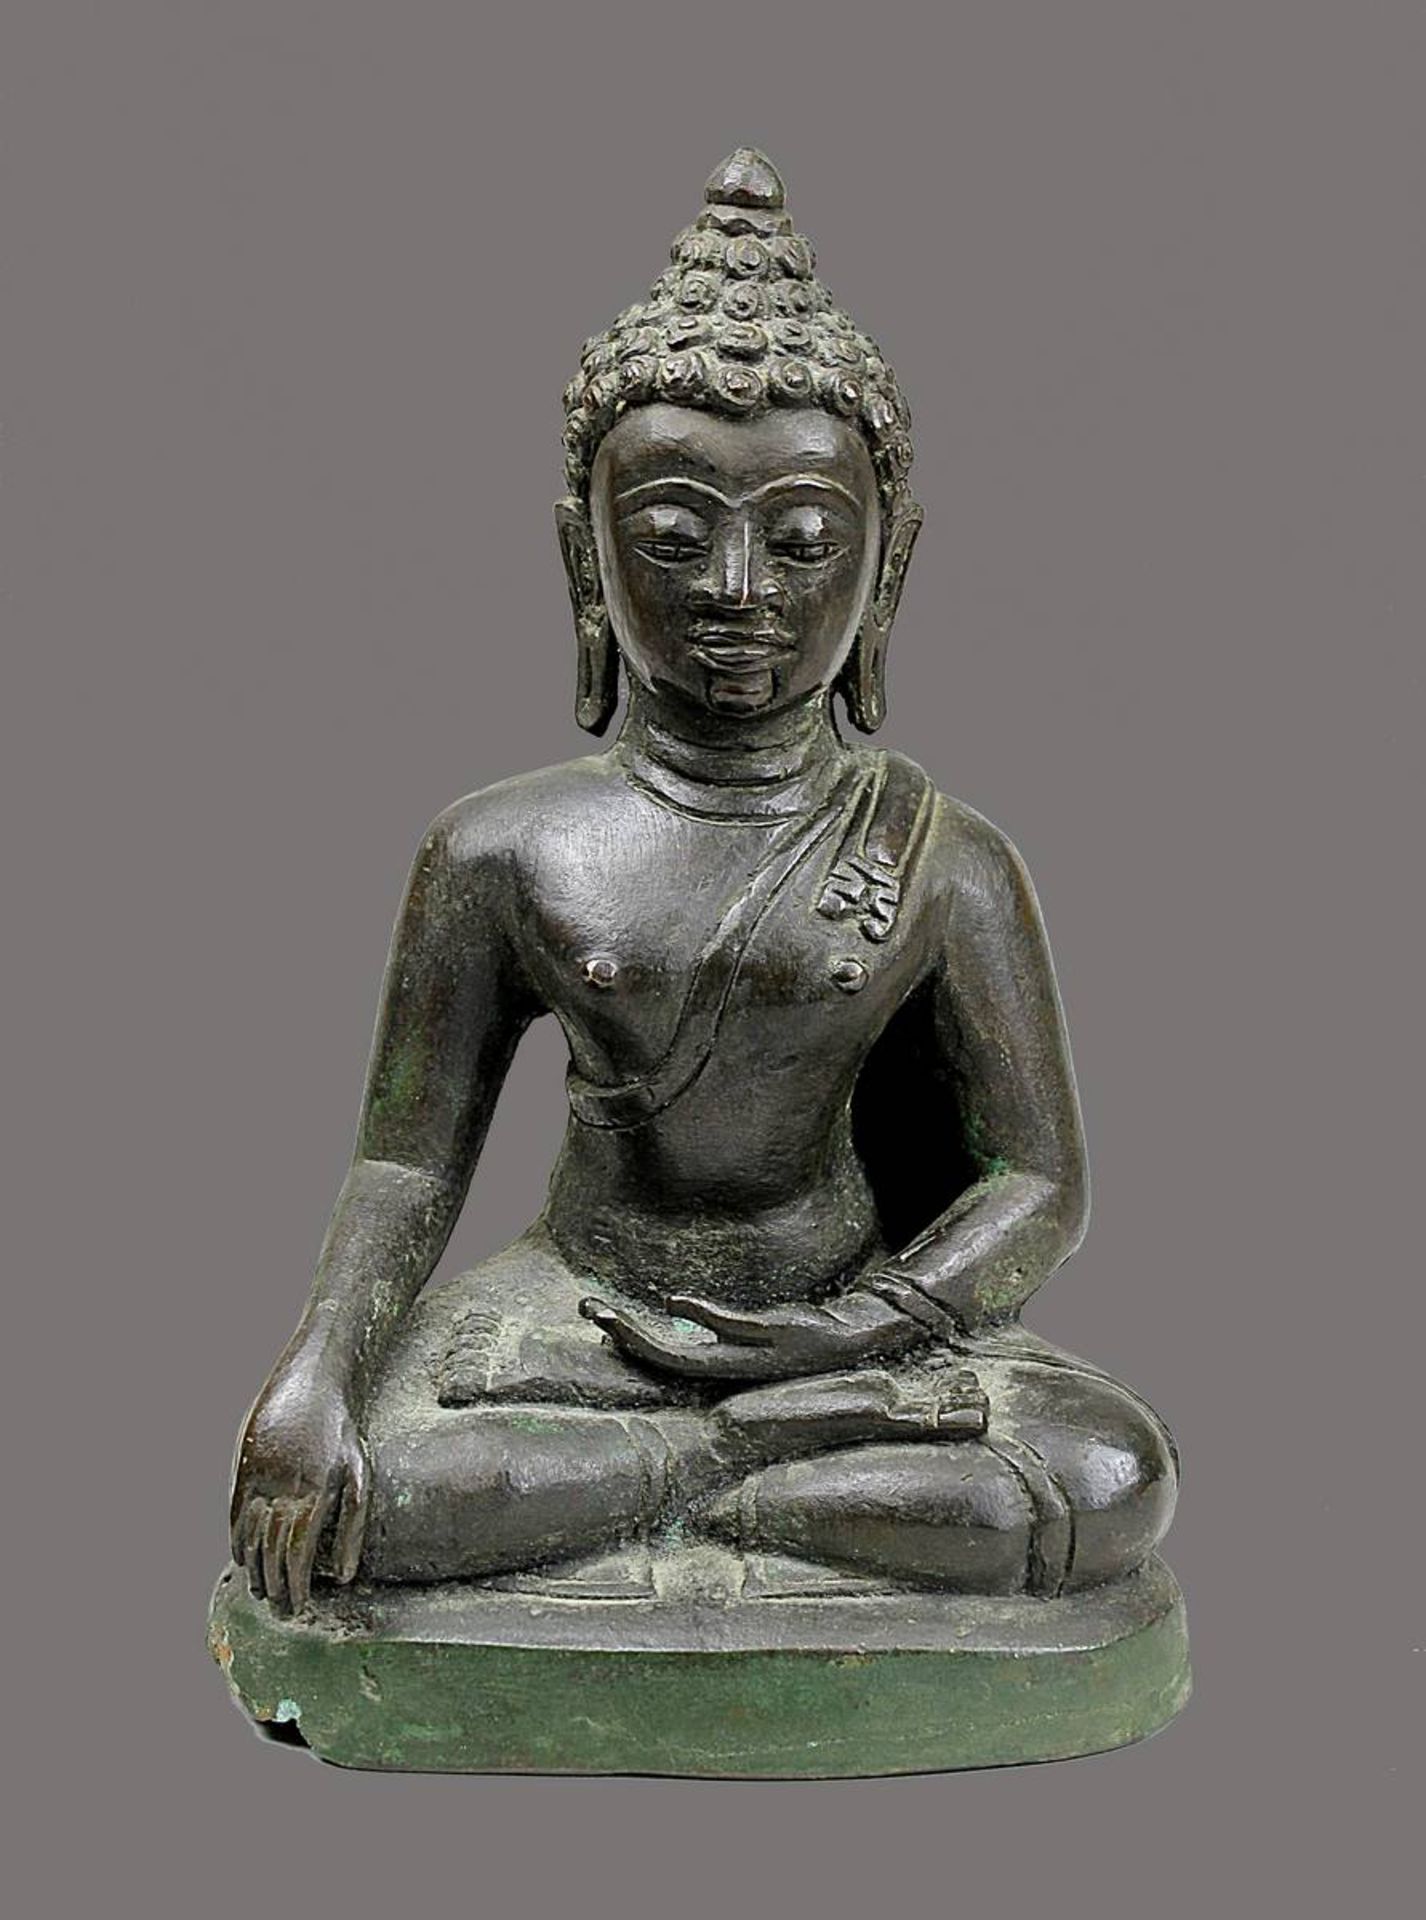 Buddha, Indien, 17./18. Jh., Bronzeguss, Darstellung in der Geste der Erdberührung im Lotussitz, mit